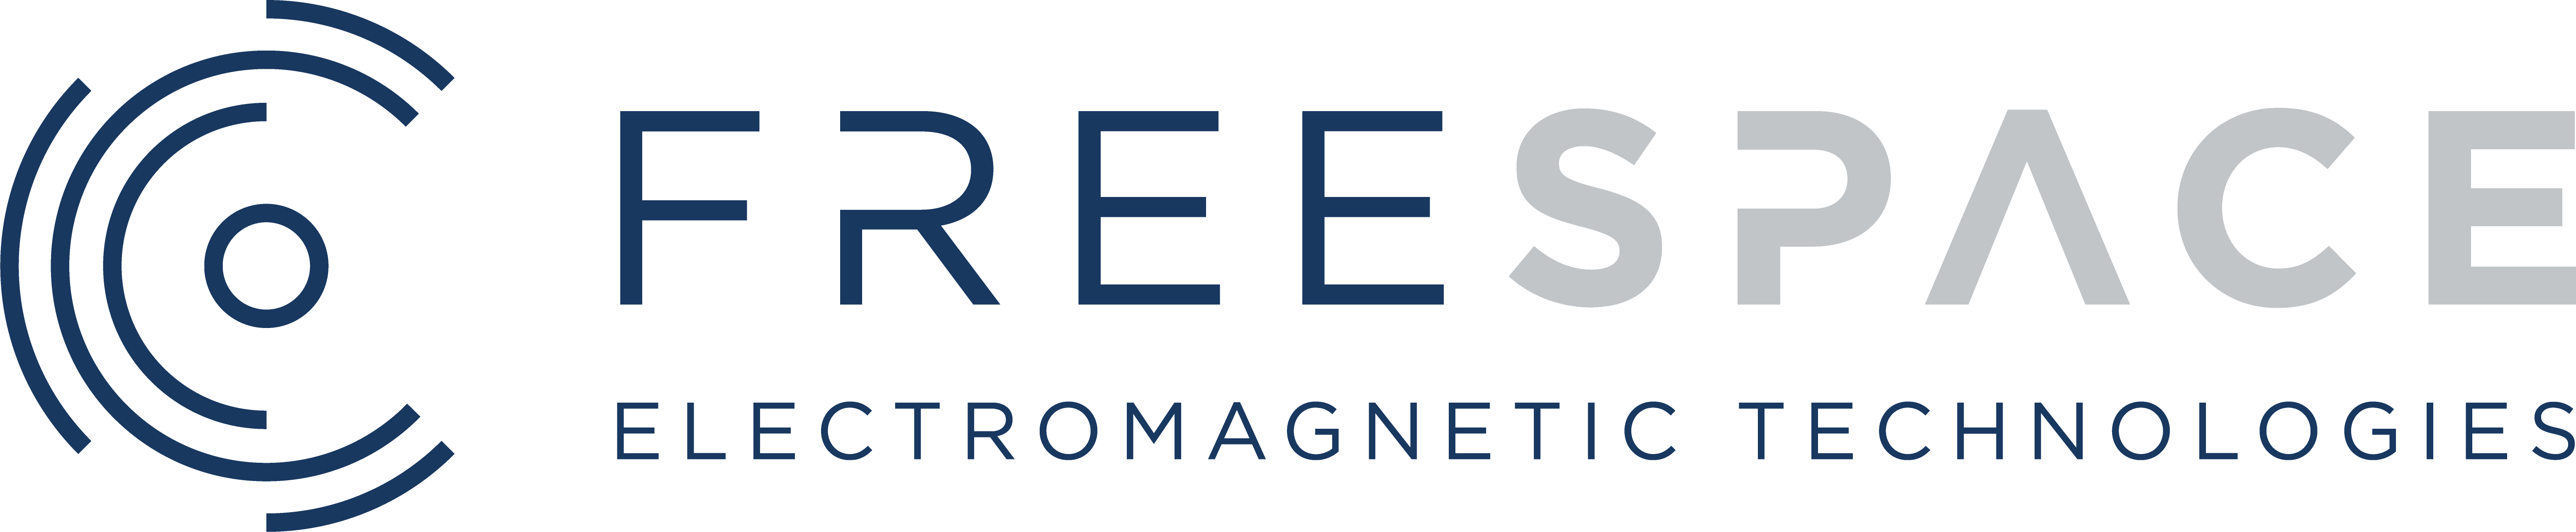 Free Space logo